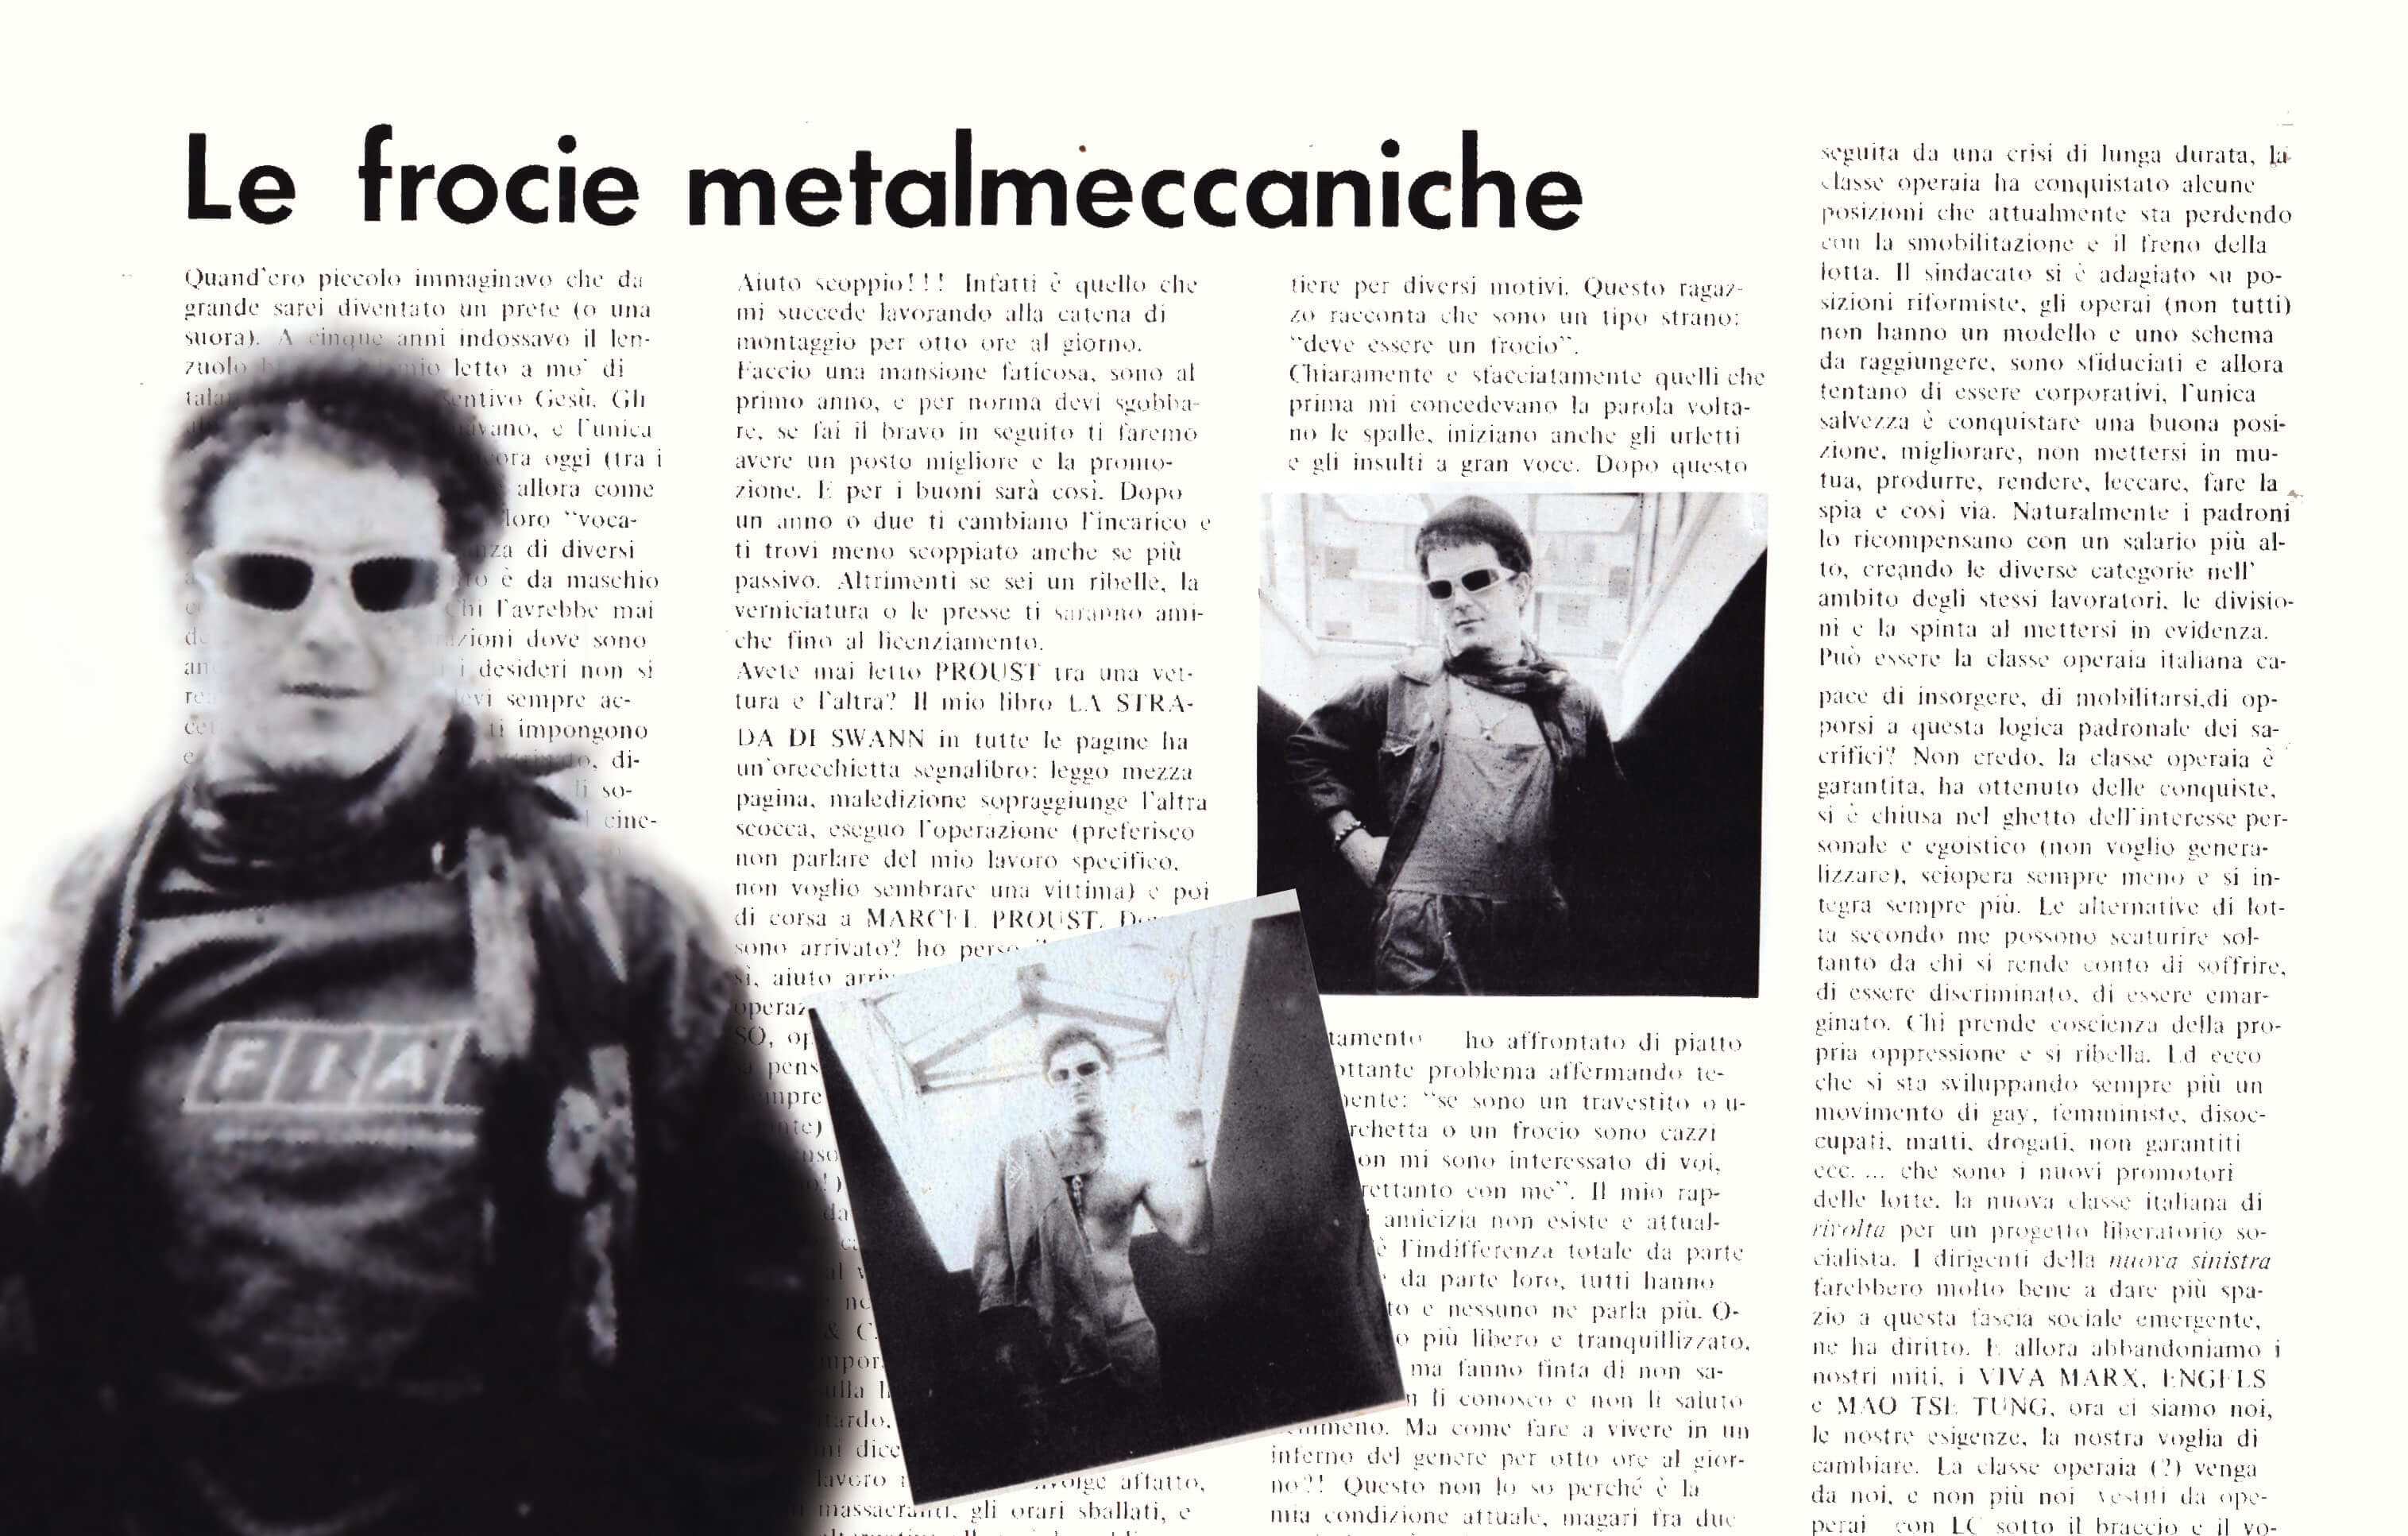 Nel 1979, sul n. 21, “Lambda” dedicò un ampio servizio alle “frocie metalmeccaniche” 